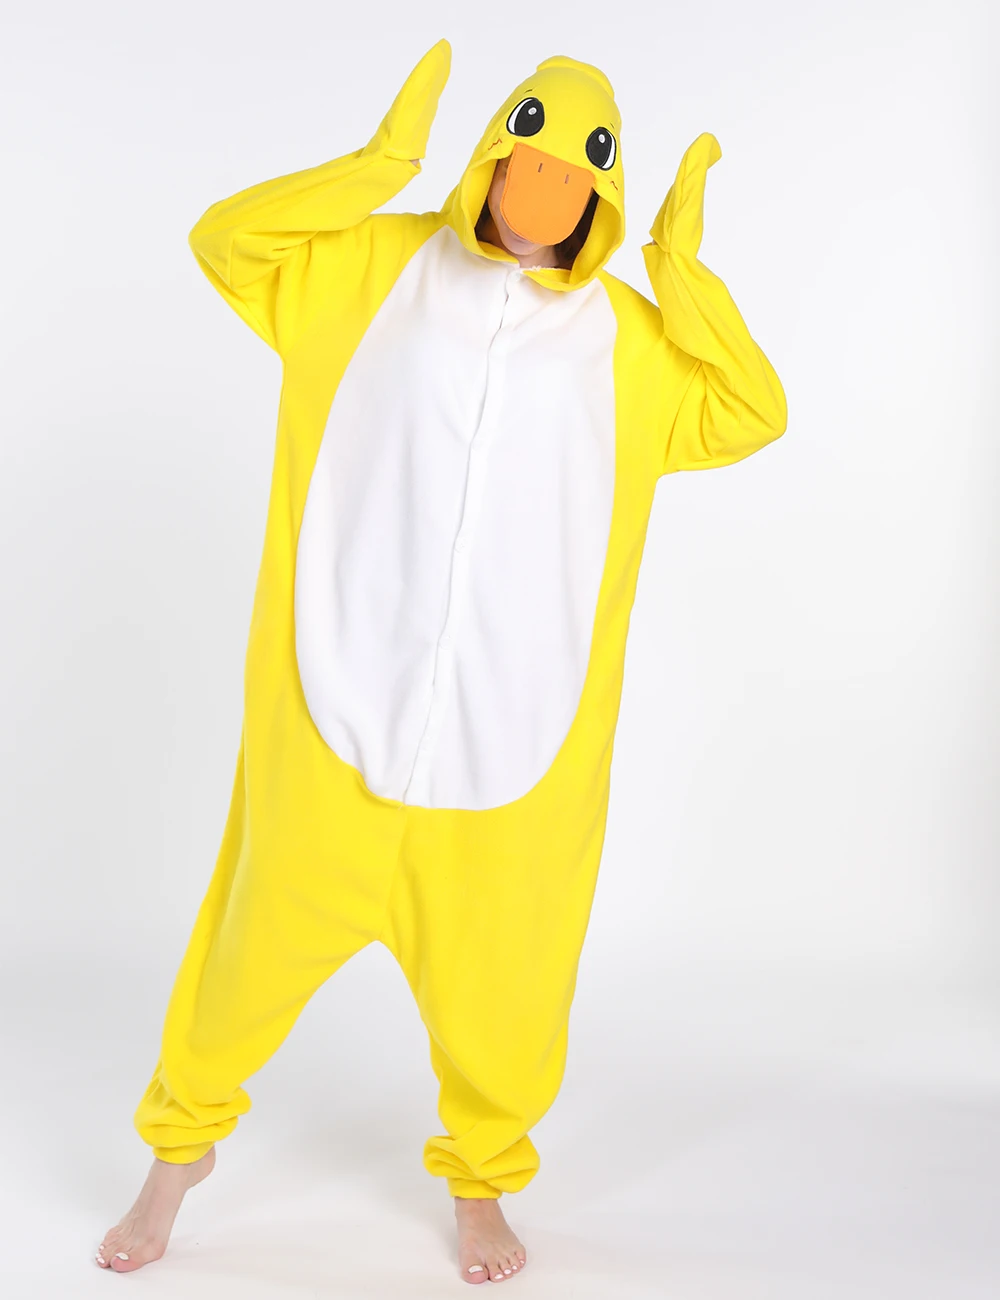 WOTOGOLD Anime Onesie Pajamas Yellow Duck Cartoon Pajamas Polar Fleece Winter Warm Adult Pyjamas Hoodies Party